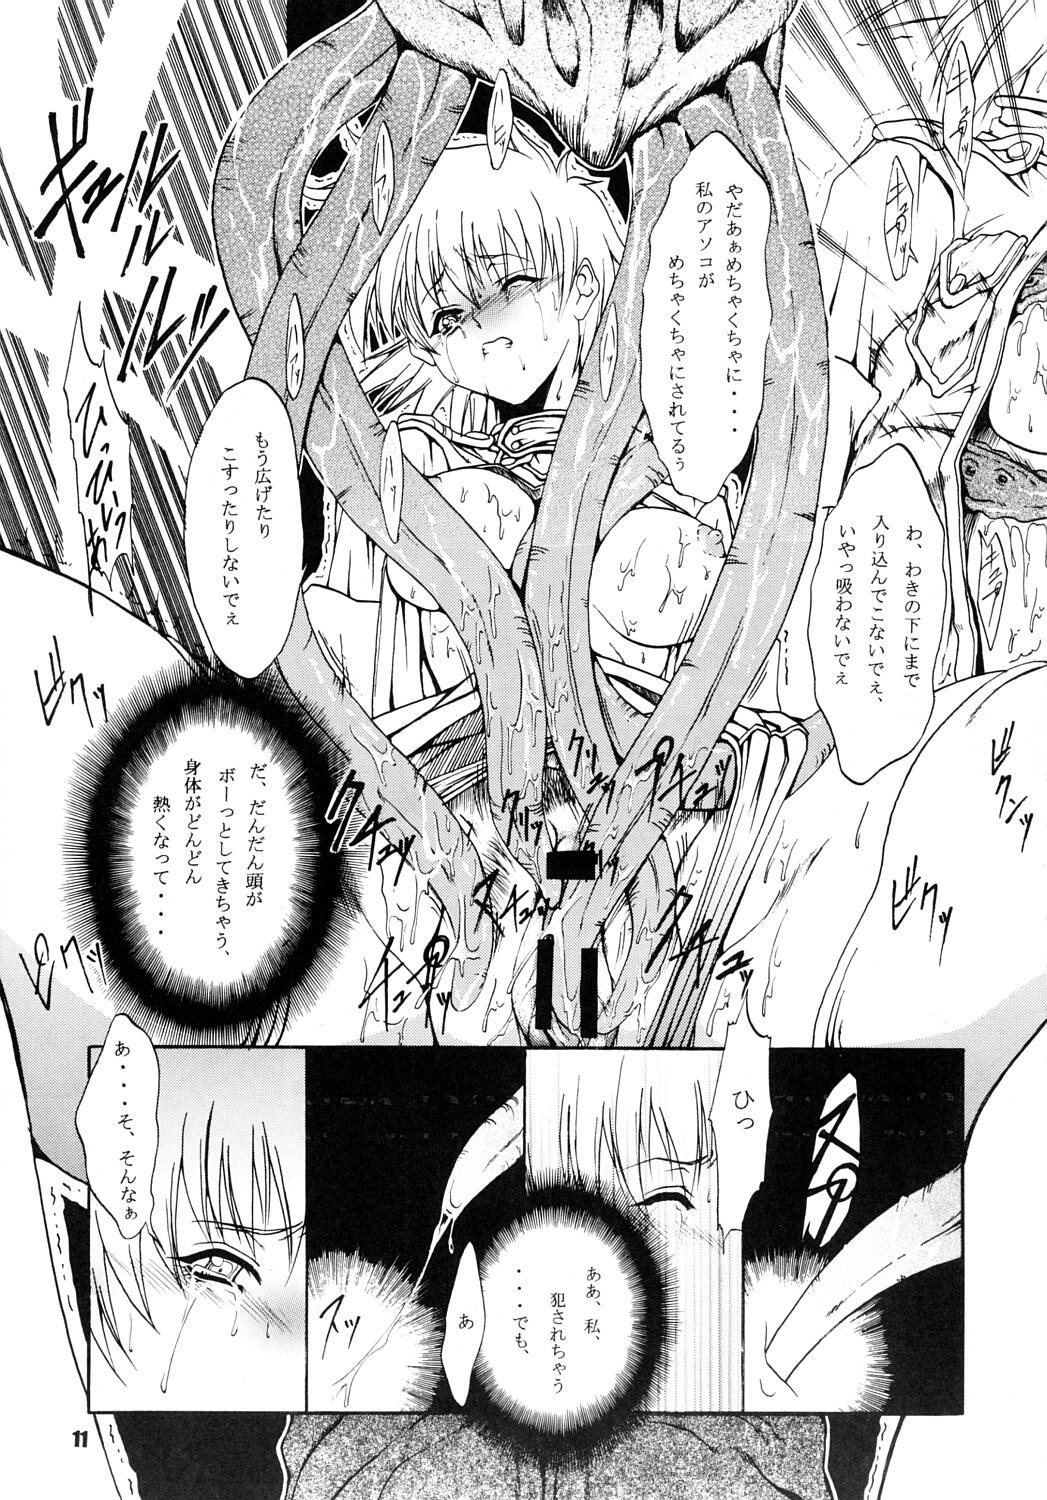 CHAOS STEP 4 hentai manga picture 8